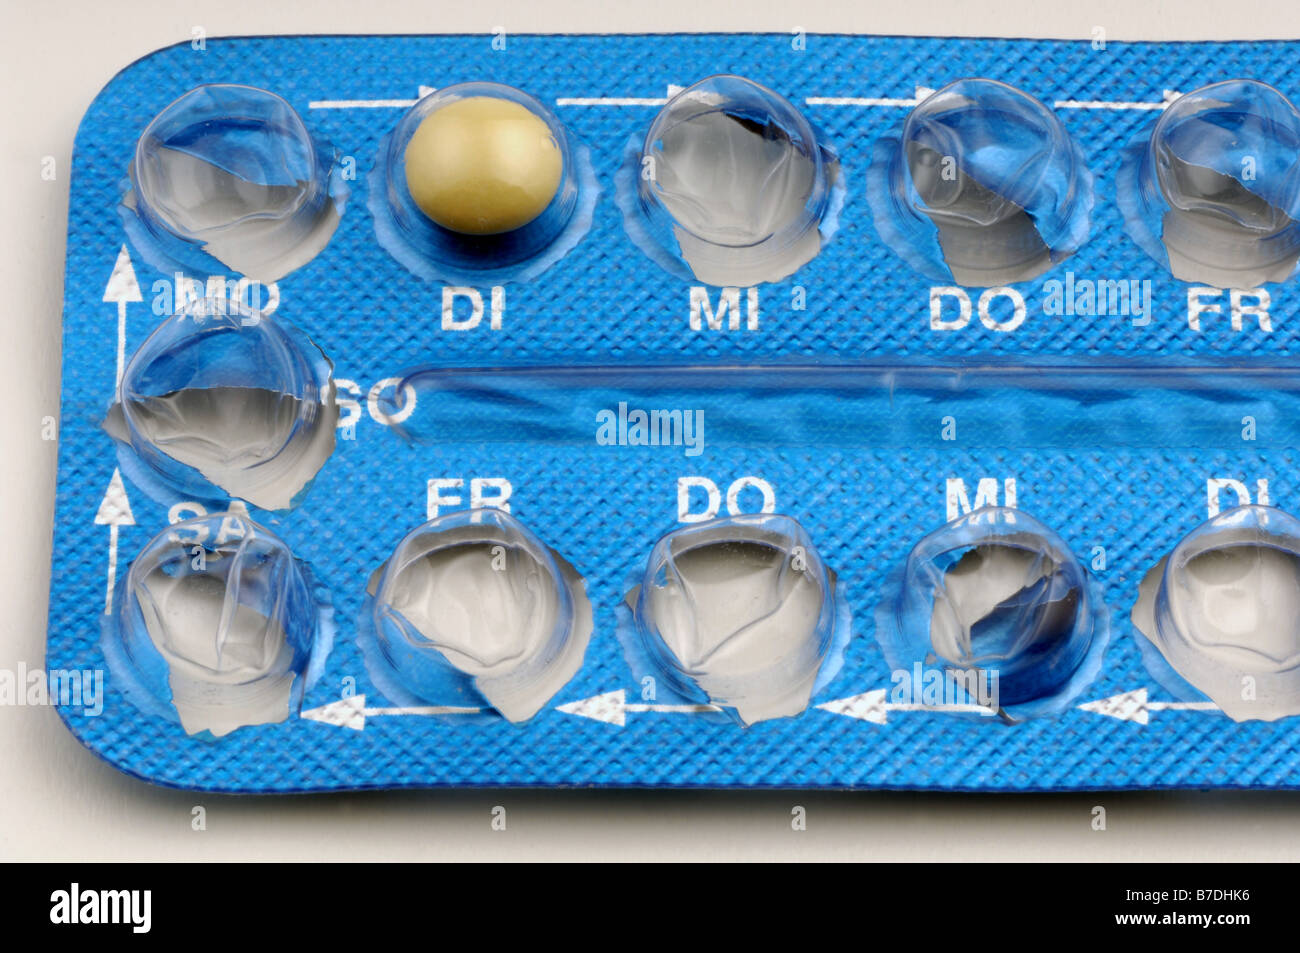 birth control pill Stock Photo